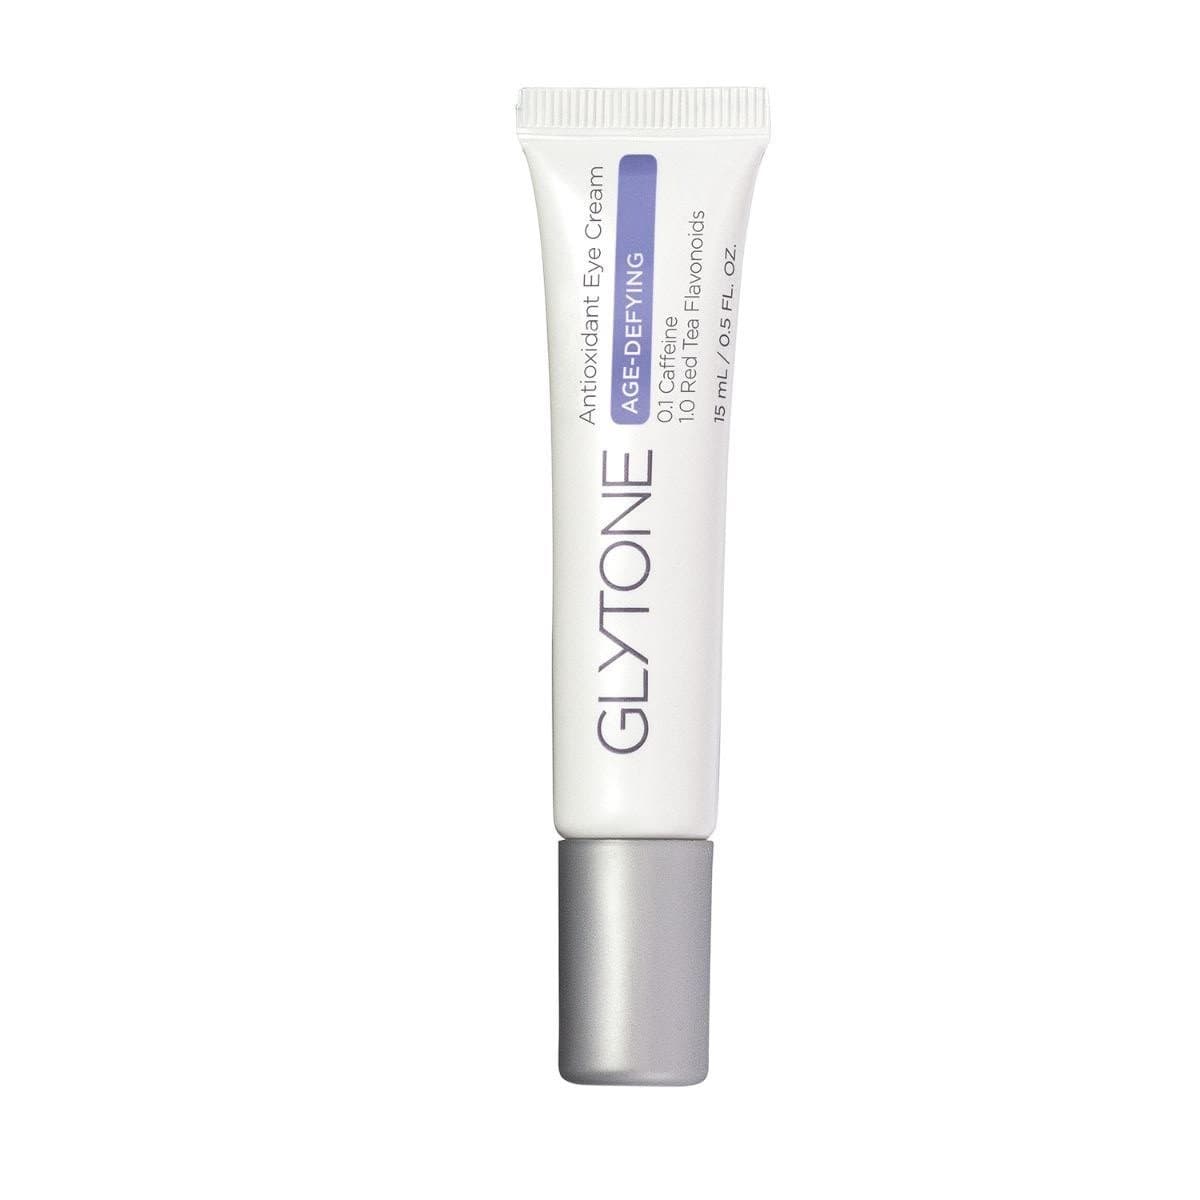 Glytone Age Defying Antioxidant Eye Cream 15 ml